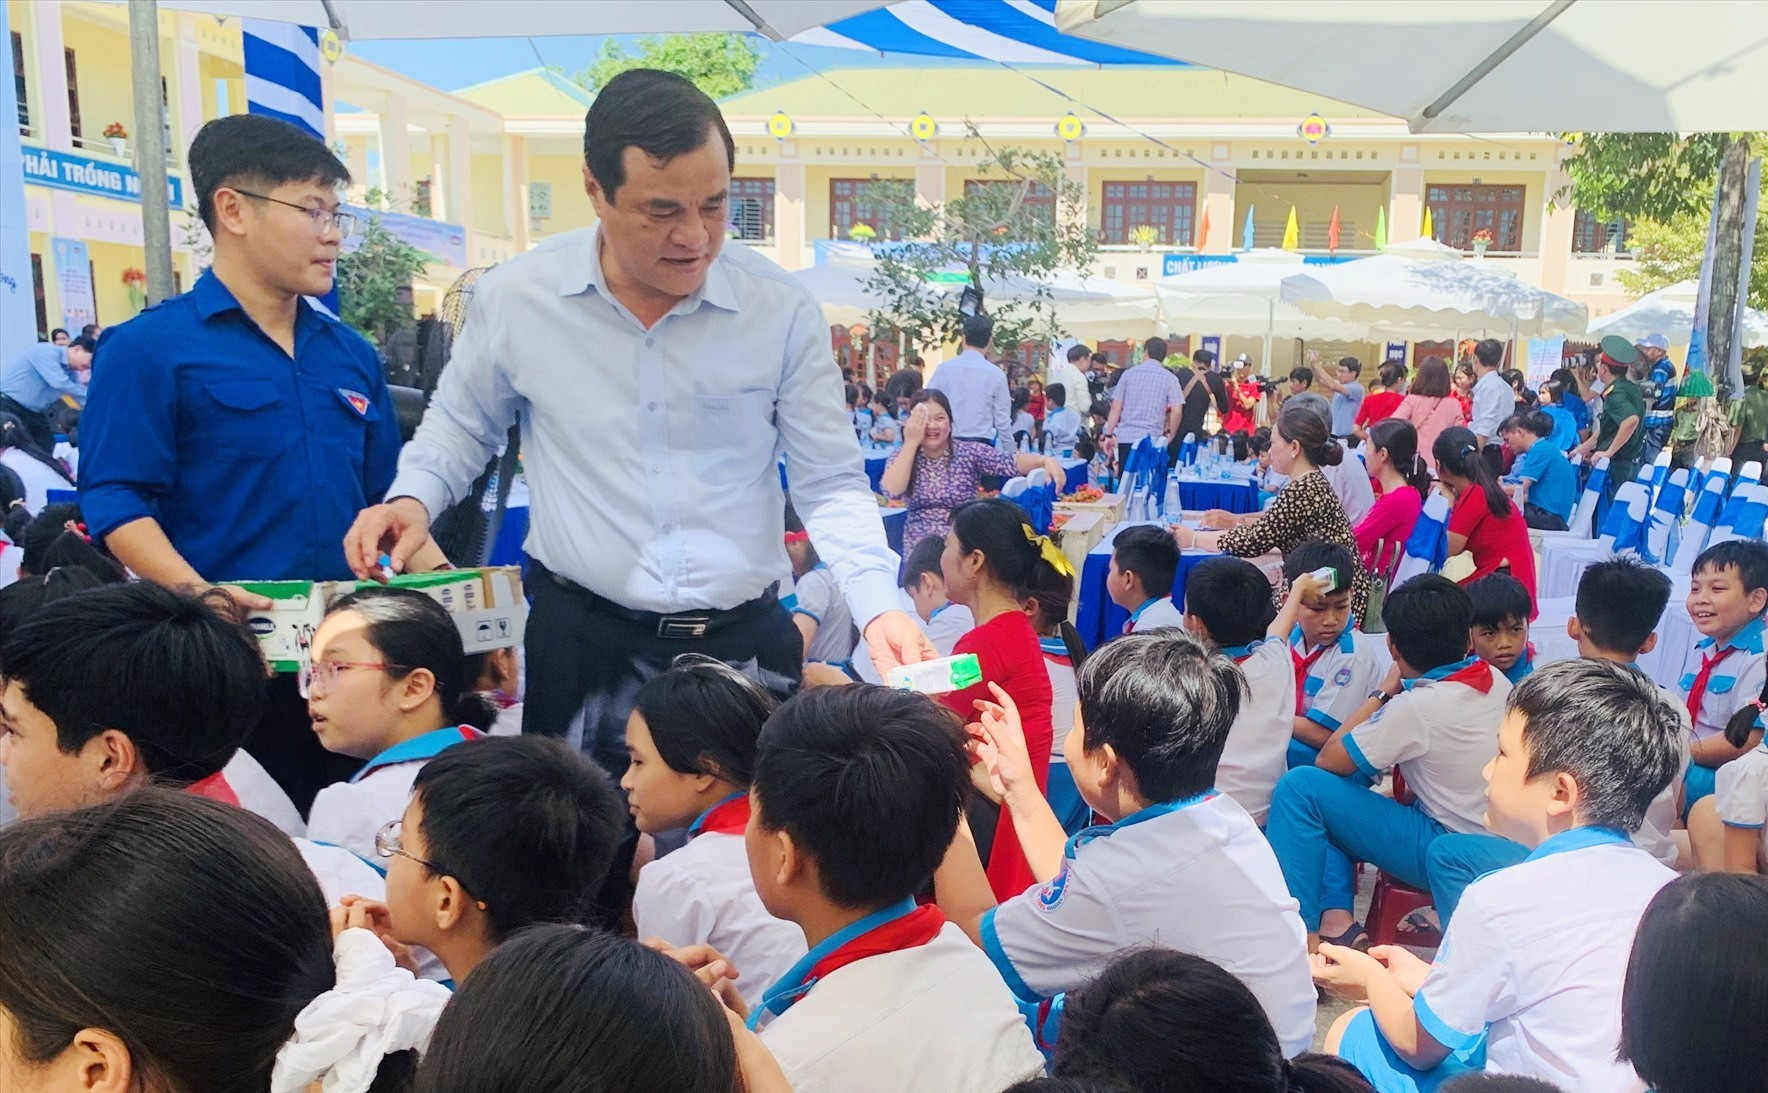 Bí thư Tỉnh ủy Phan Việt Cường trao sữa cho các em học sinh tại chương trình. Ảnh: PHAN VINH